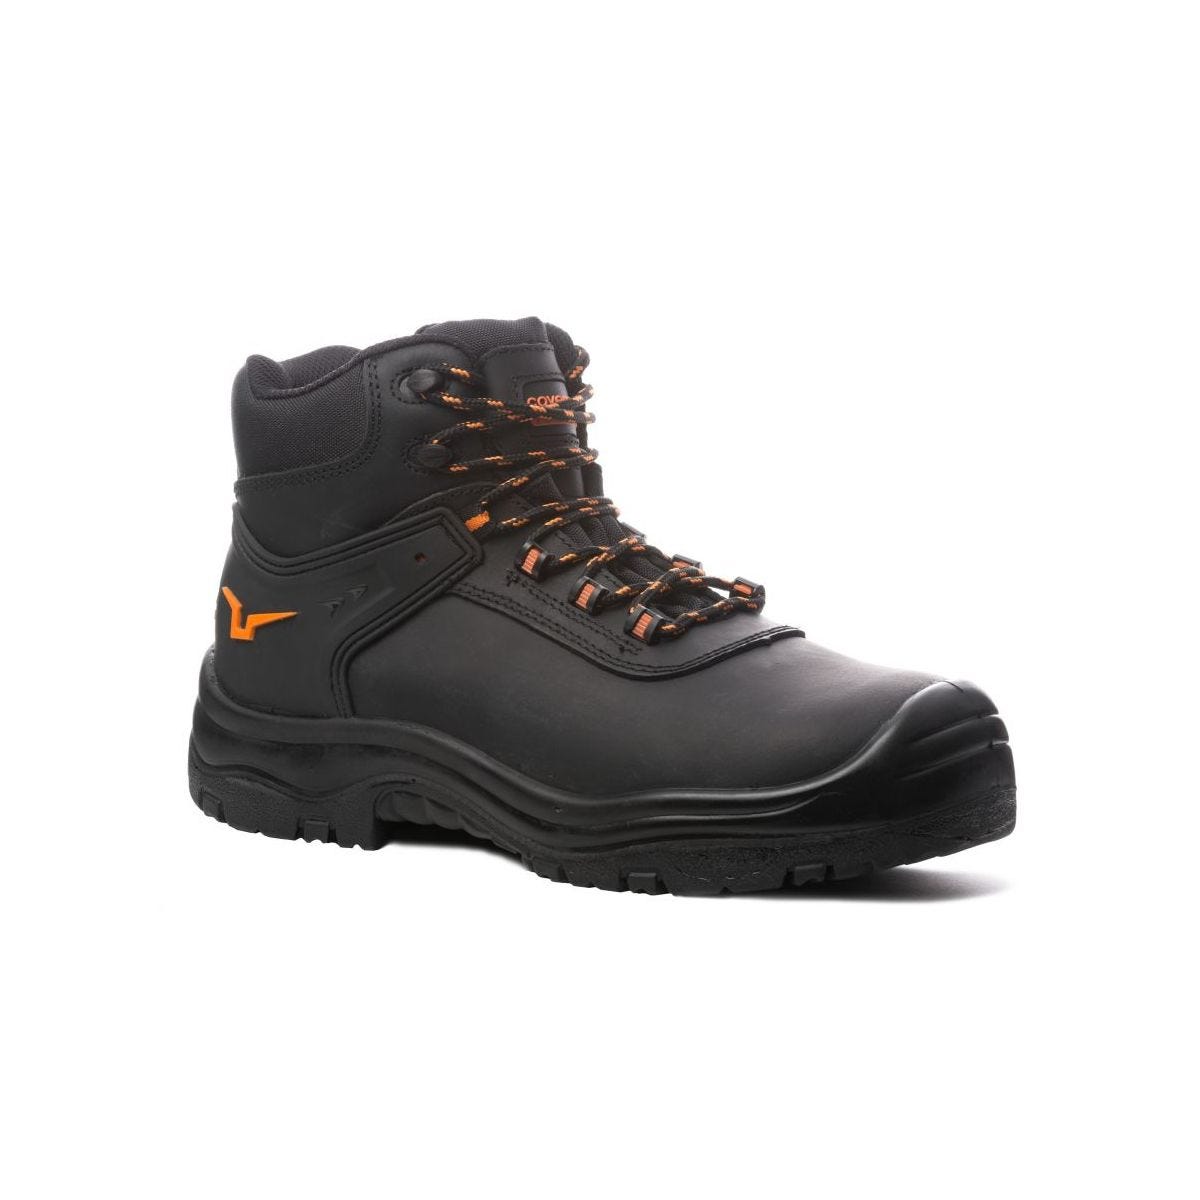 Chaussures de sécurité hautes S3 SRC OPAL composite Noir - Coverguard - Taille 39 0